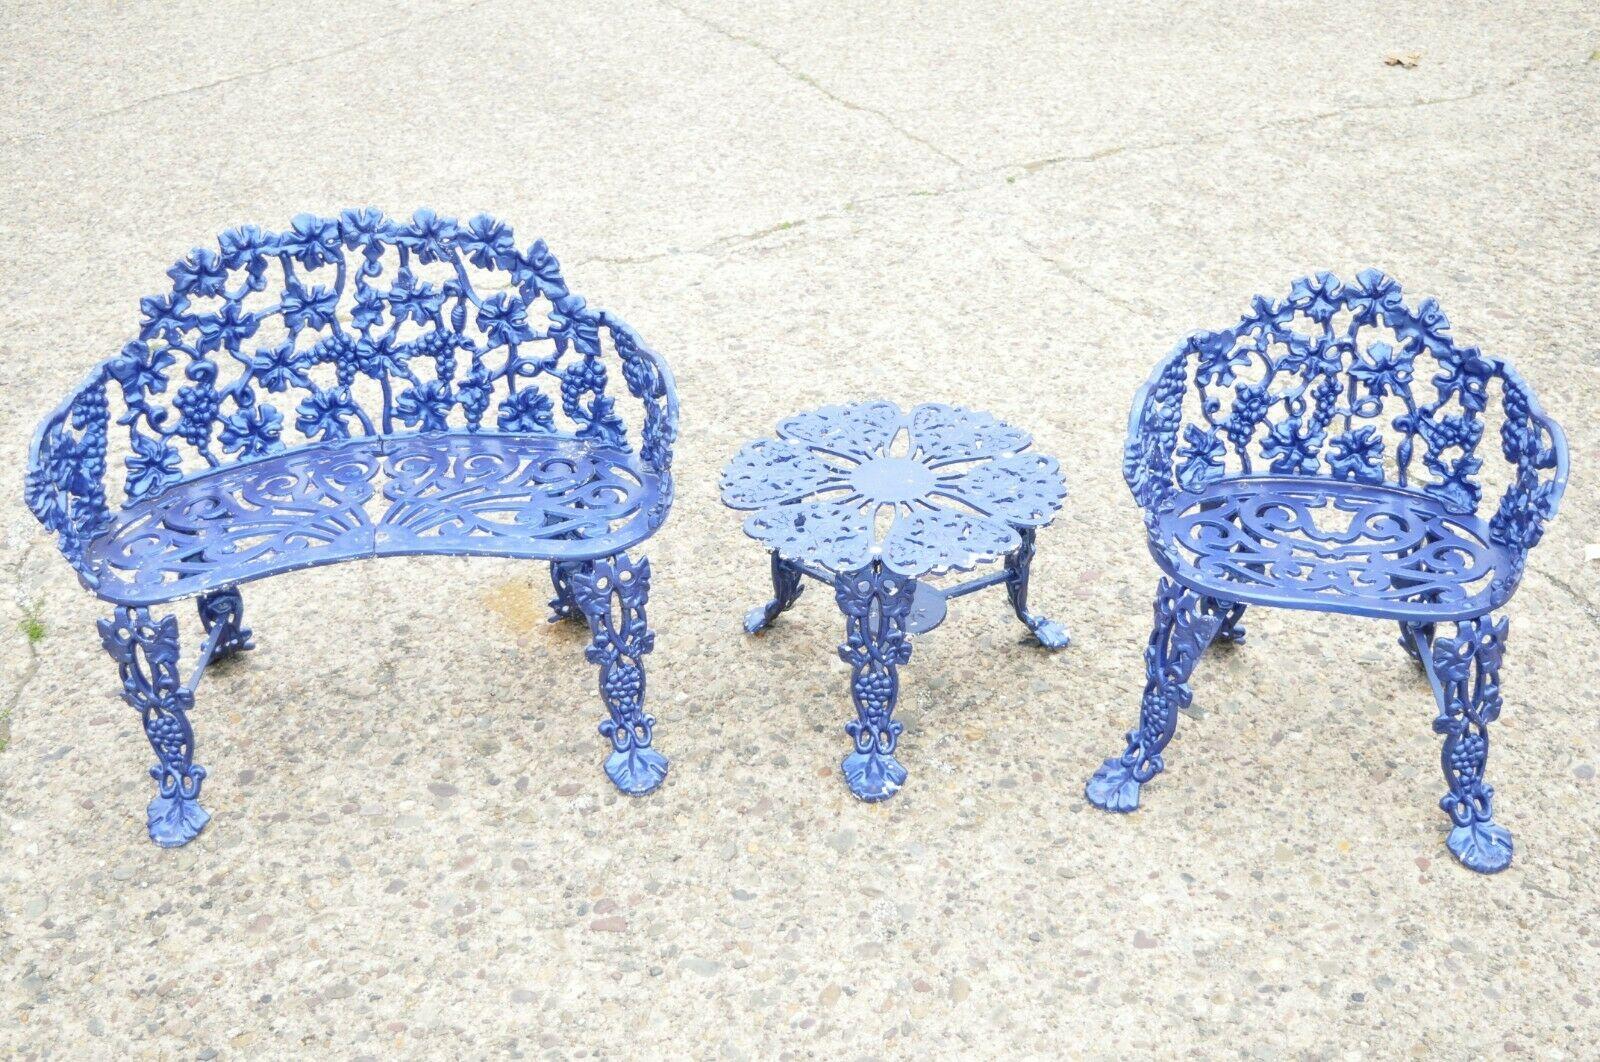 Cast Aluminum Blue Grapevine Garden Set Loveseat Chairs Table, 3 Pc Set 4